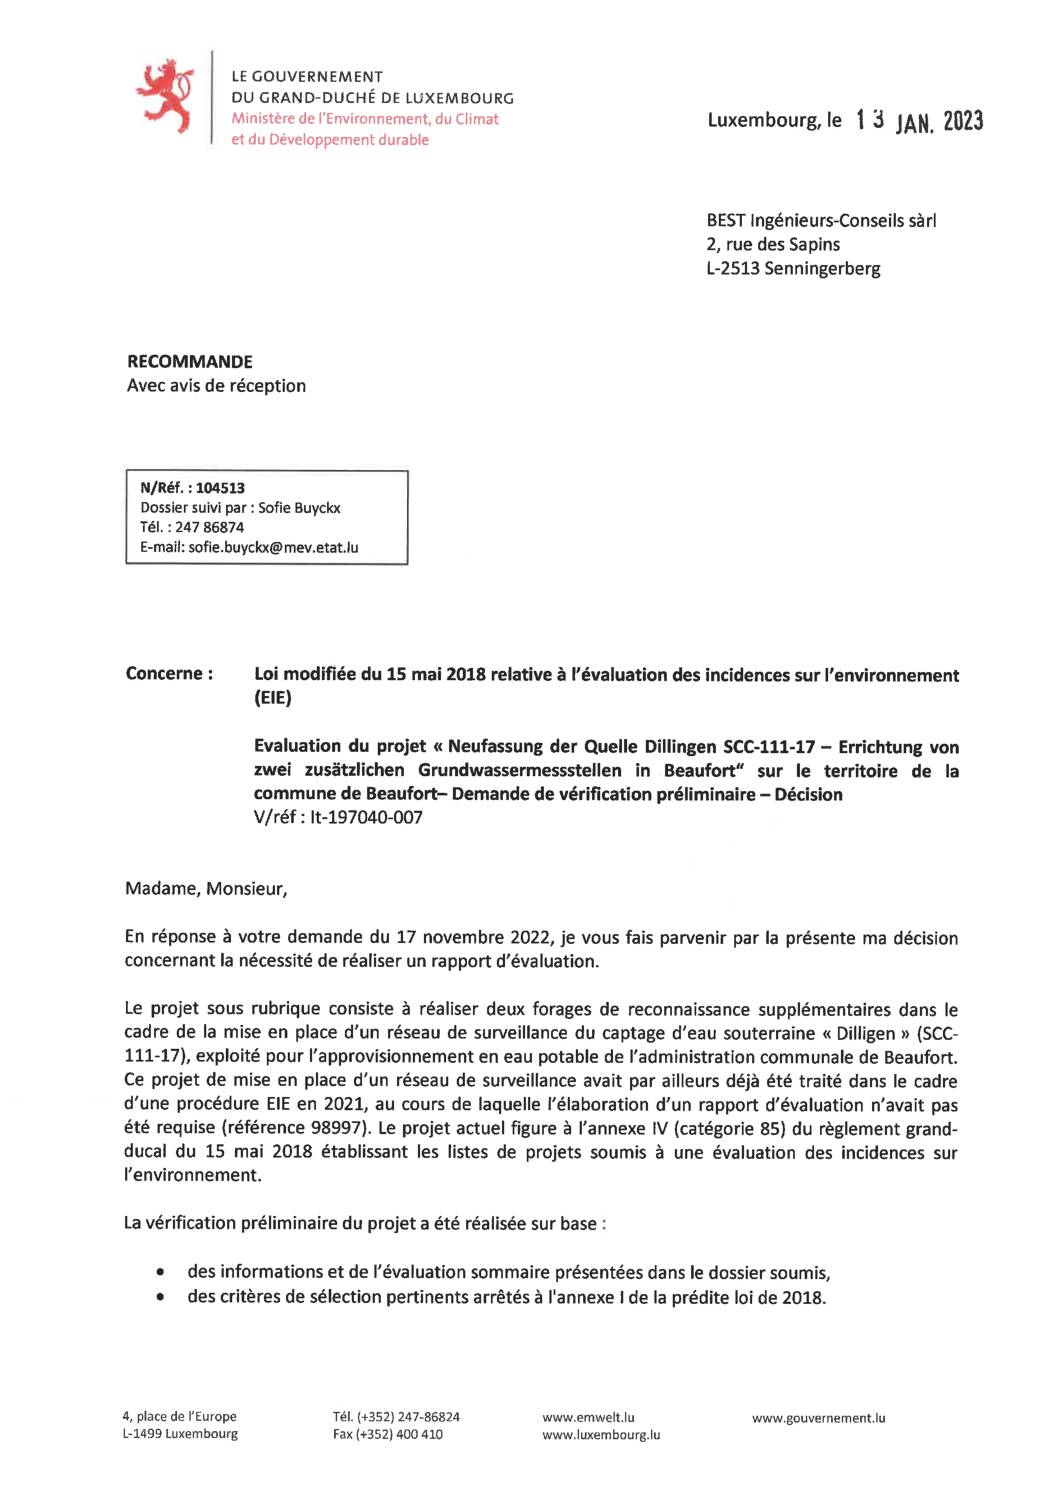 Decision évaluation des incidences sur l'environnement source Dillingen